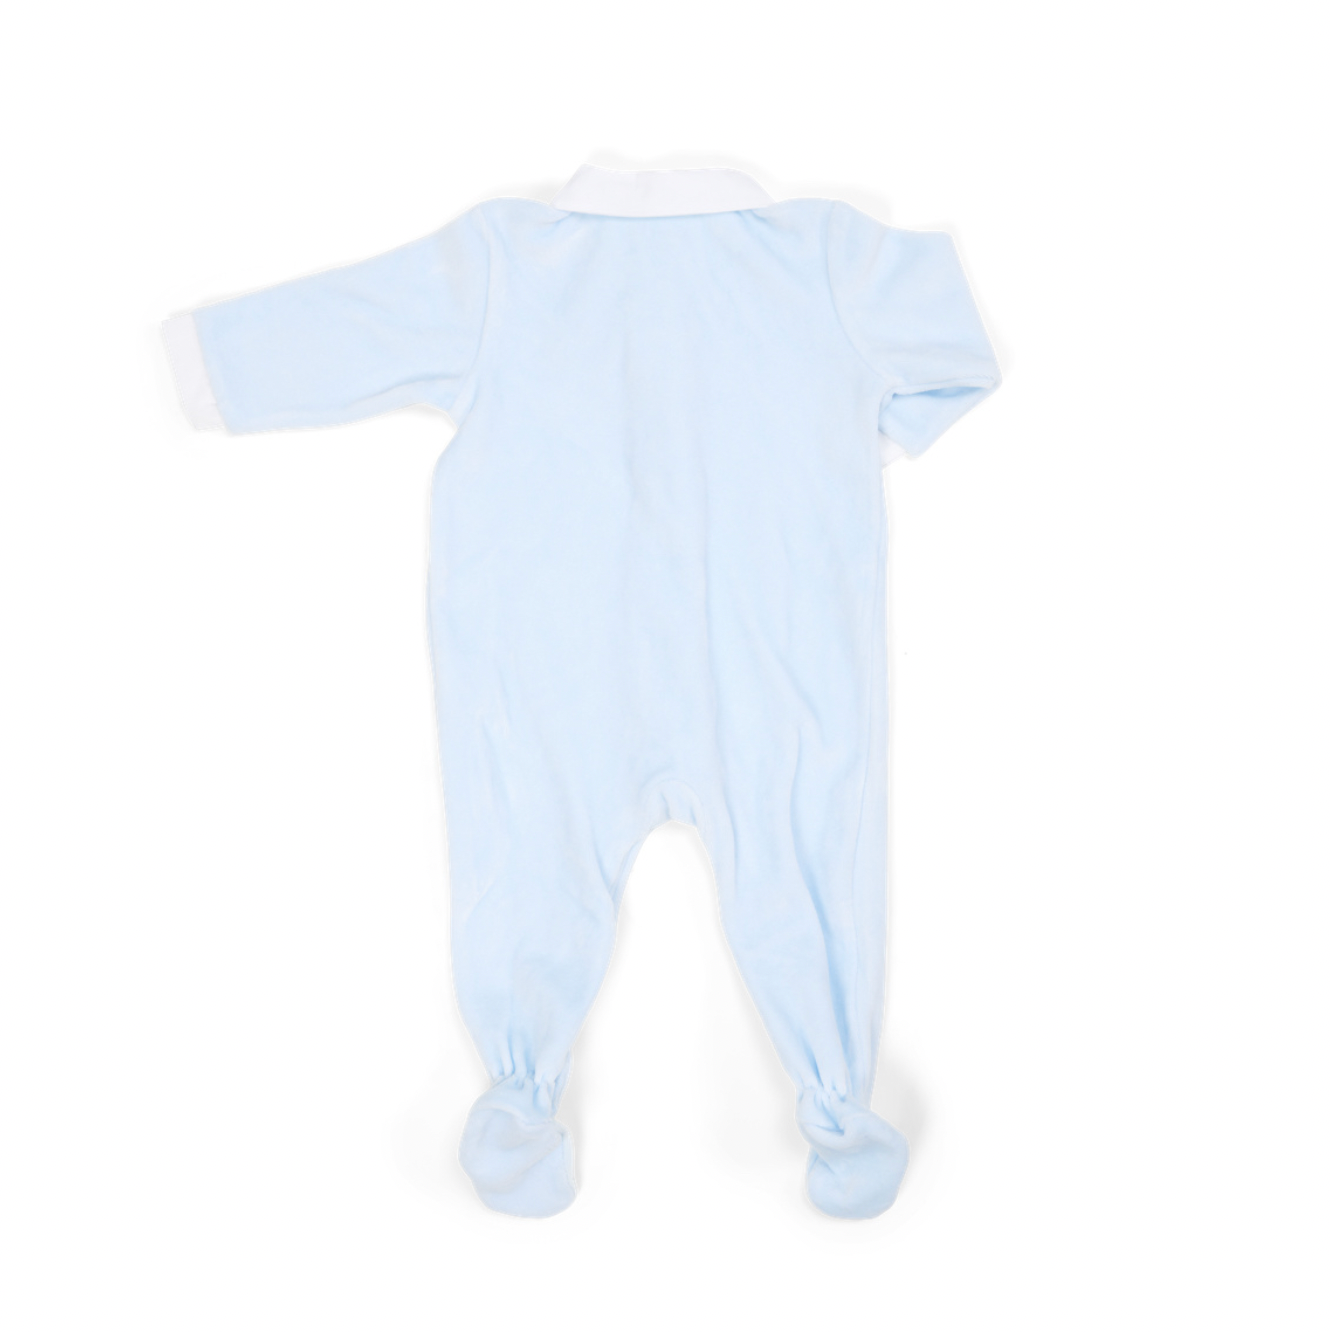 Baby Strampler Samt hellblau mit weißem Kragen von Poetree Kids